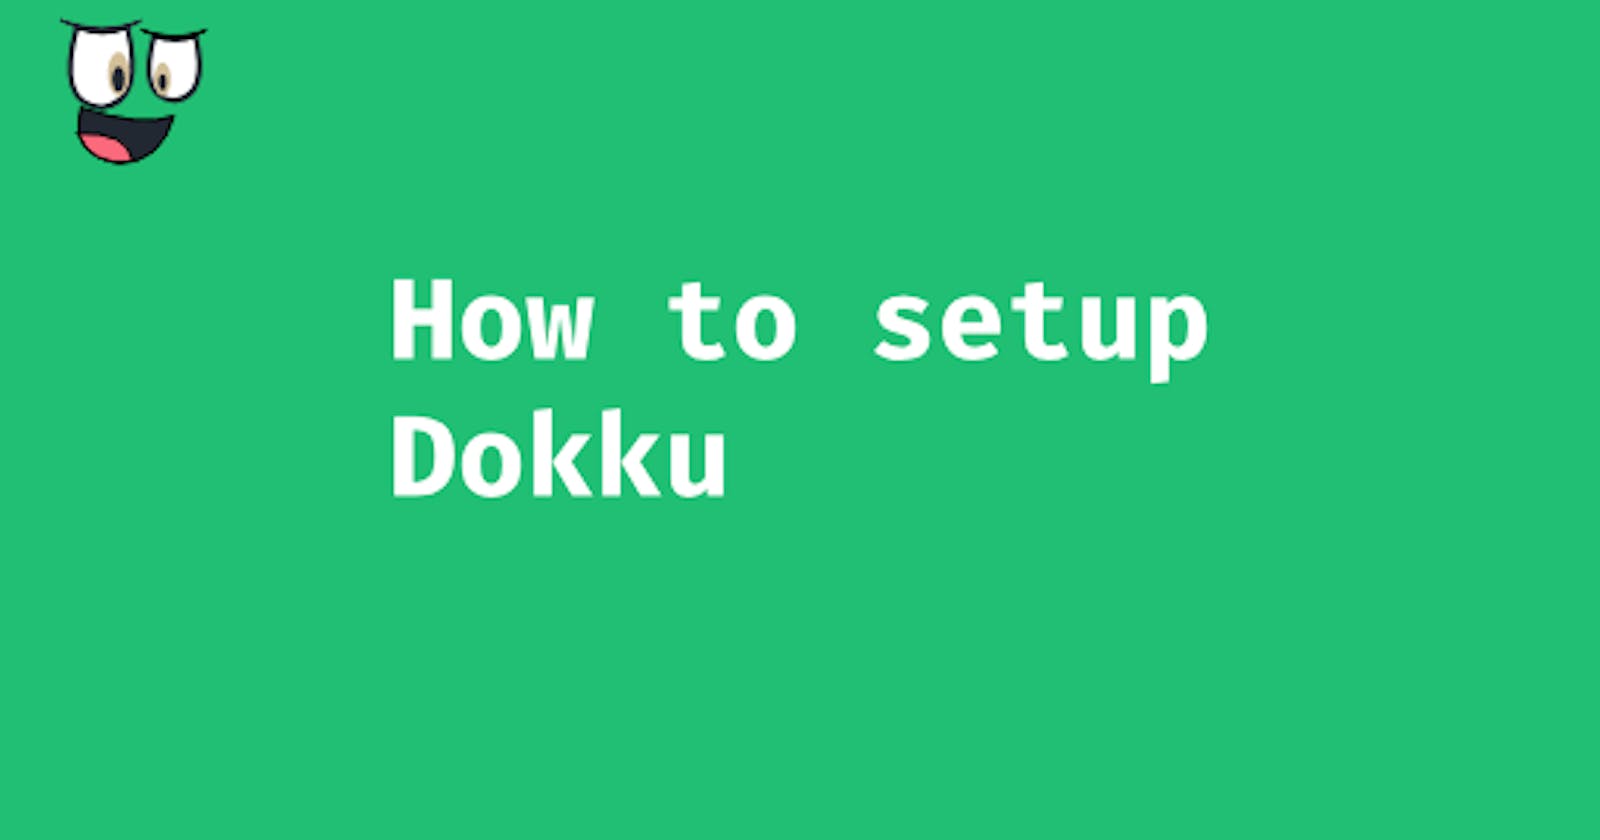 How to setup Dokku